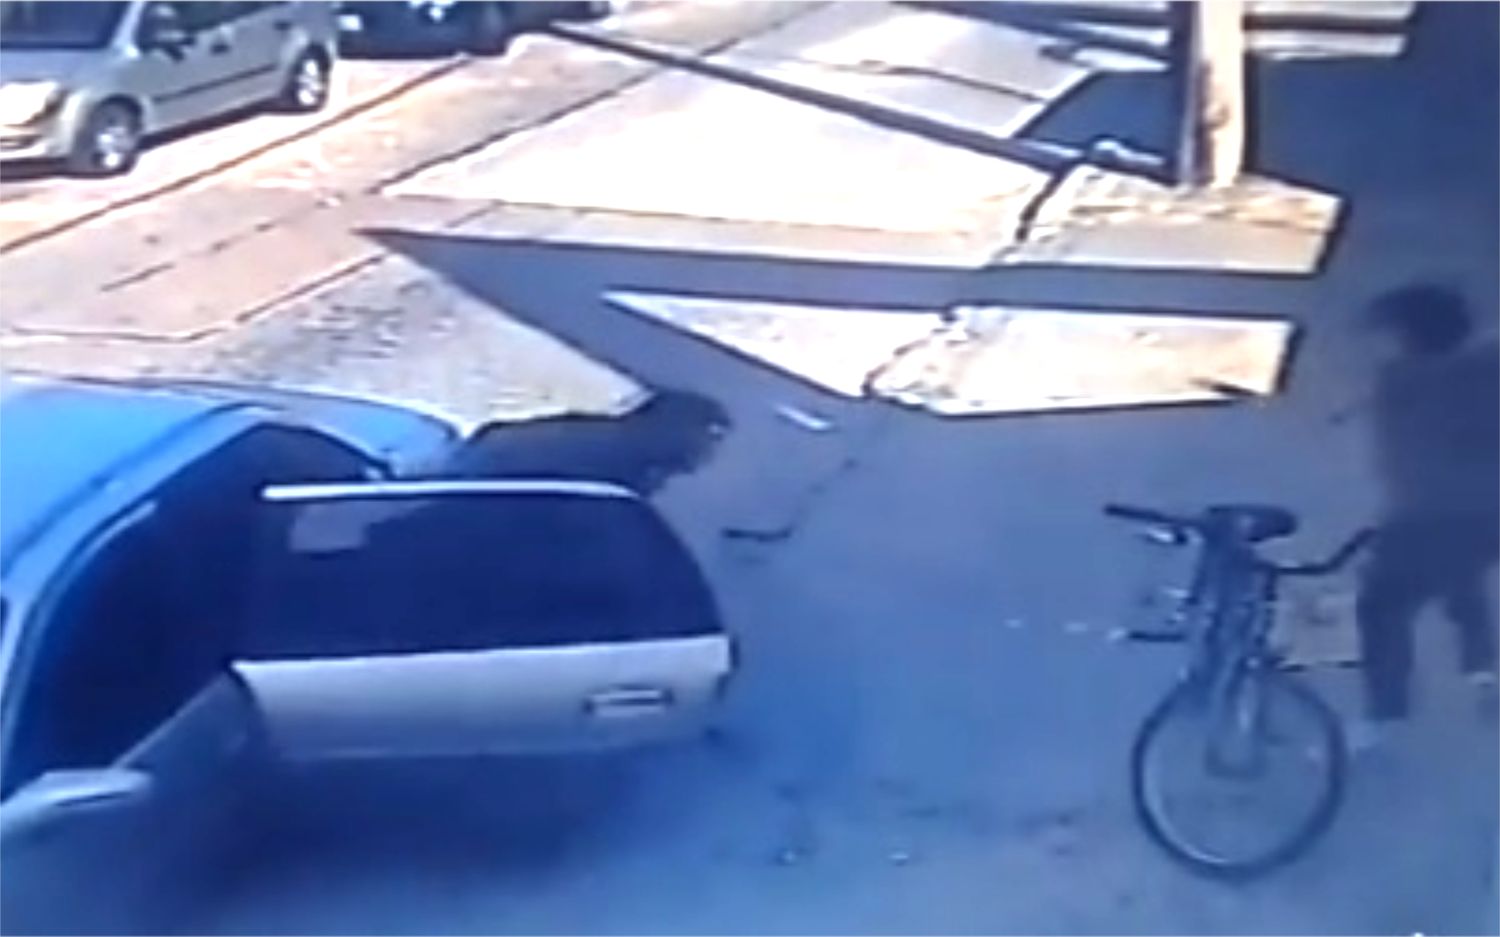 Escalofriante video: Así intentaron llevarse en un auto a una mujer en La Matanza 